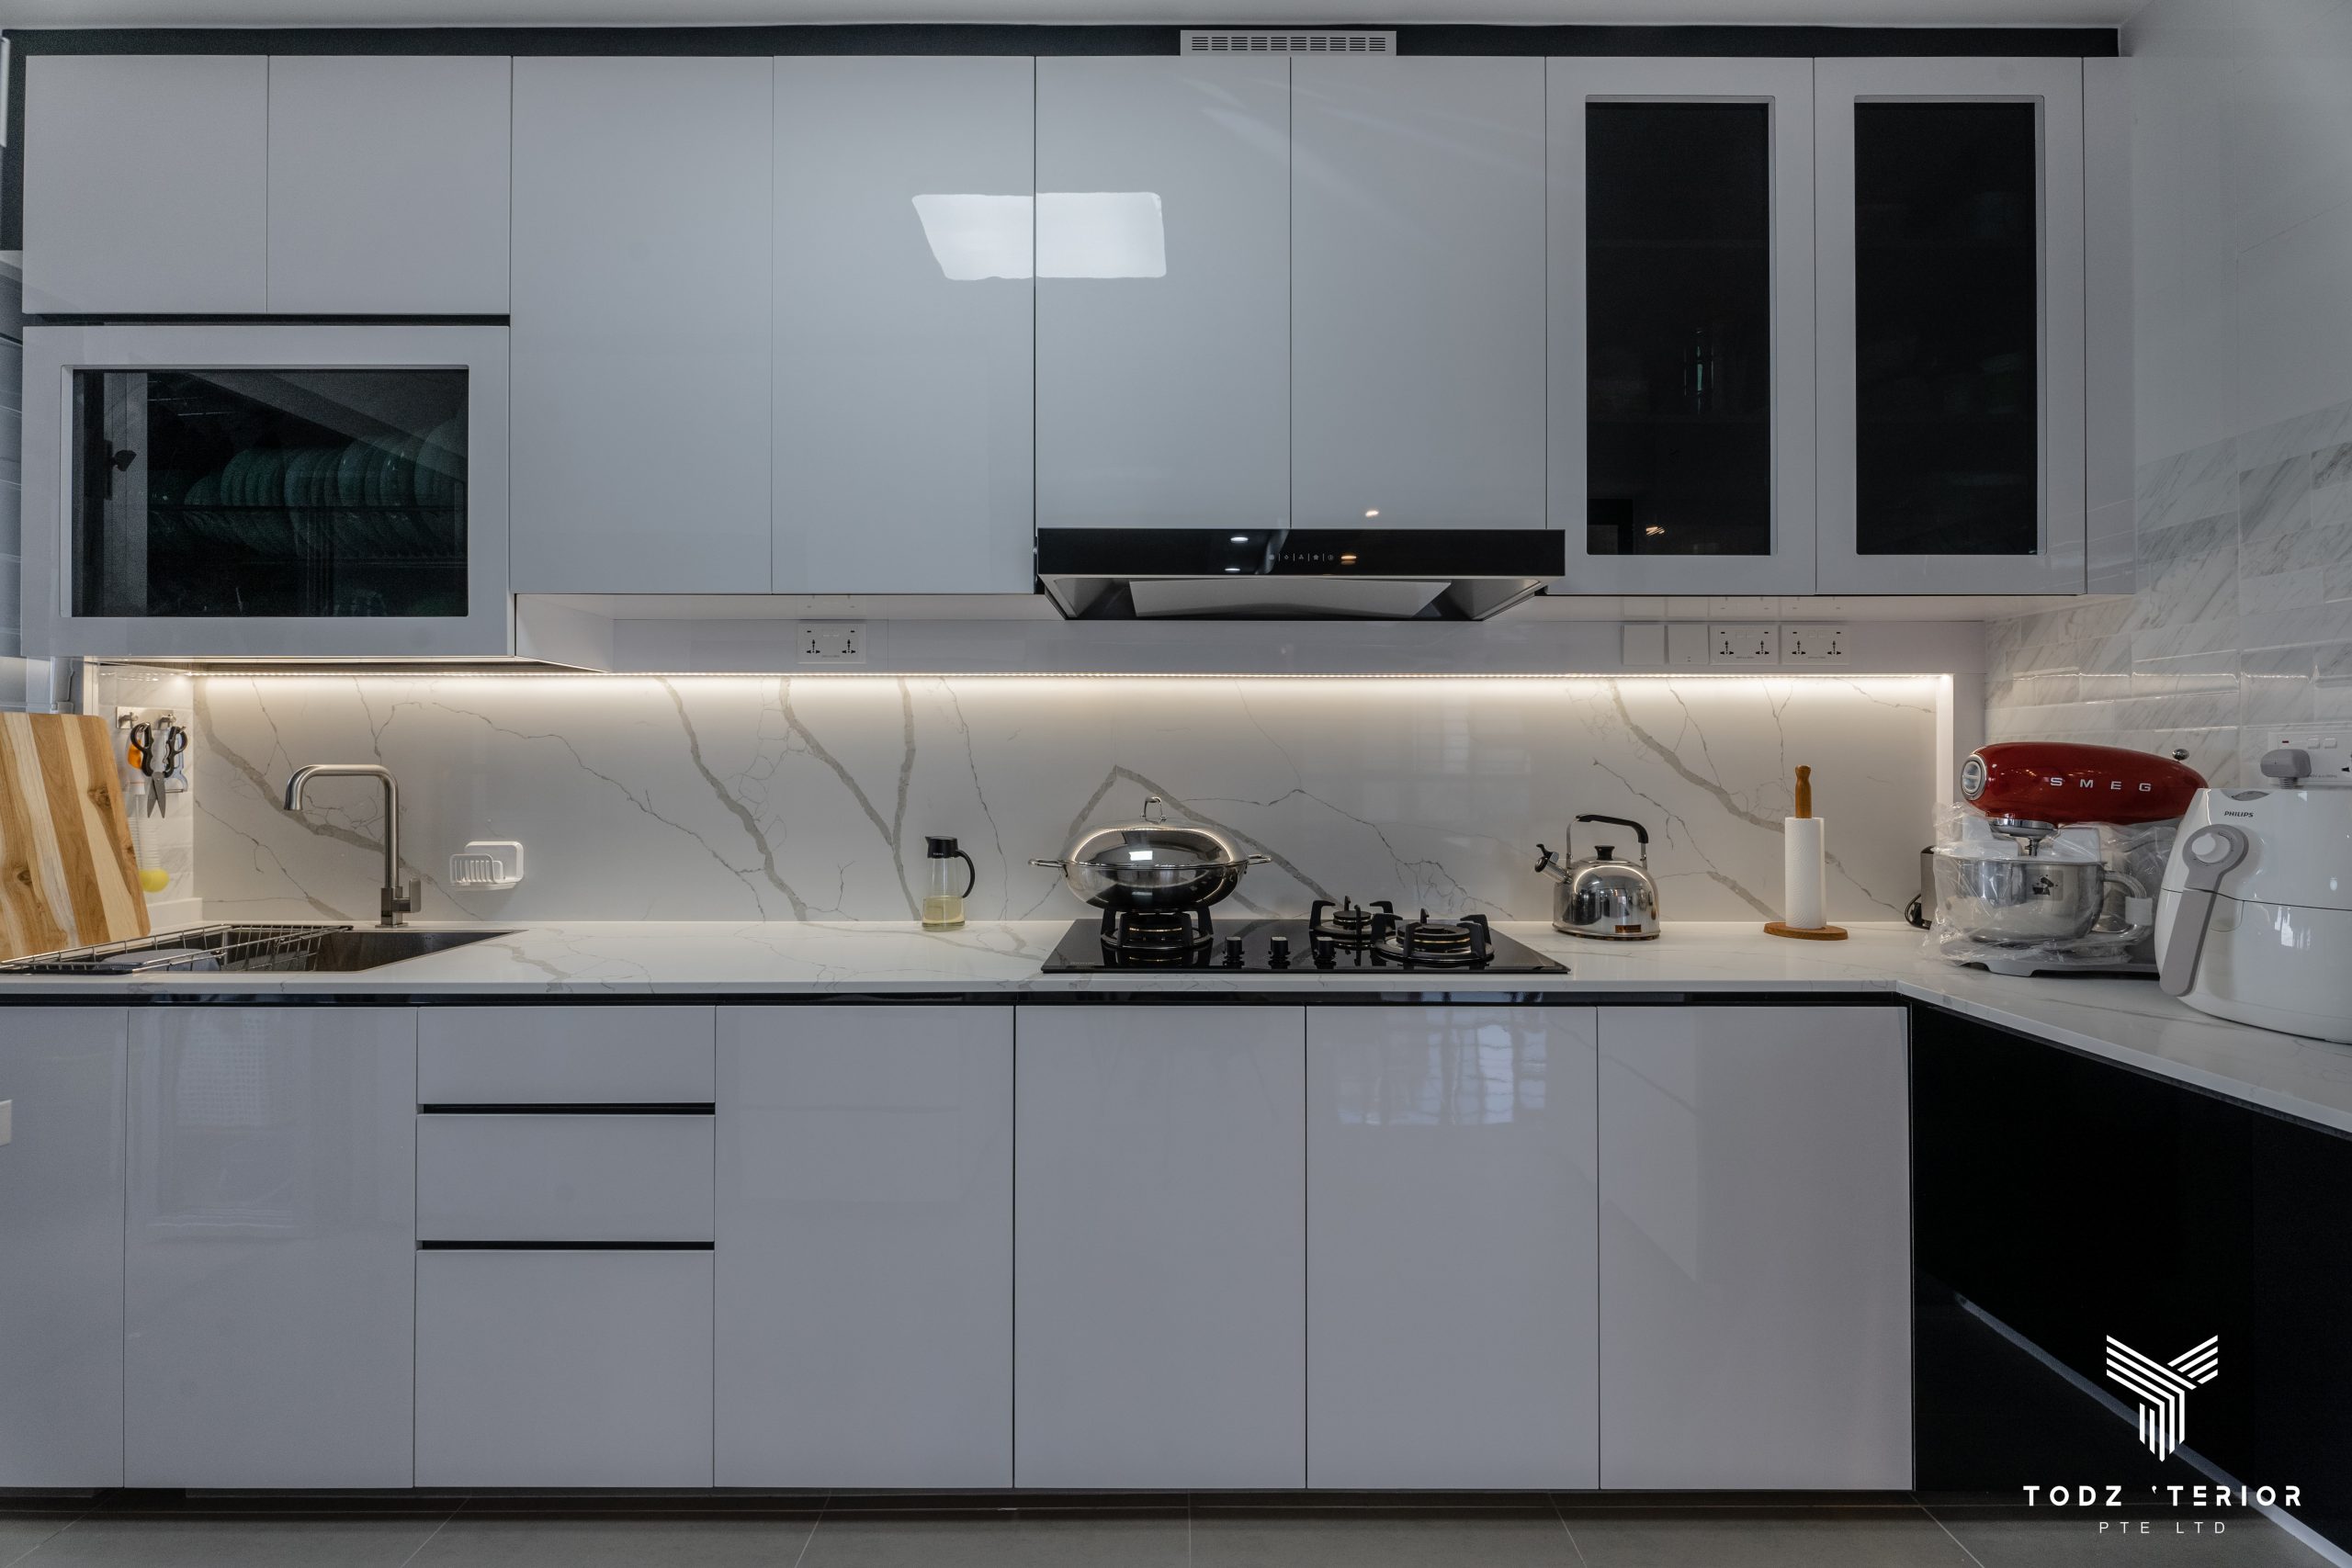 HDB 18 Room Kitchen Cabinet Design Ideas   Todz'Terior Best ...